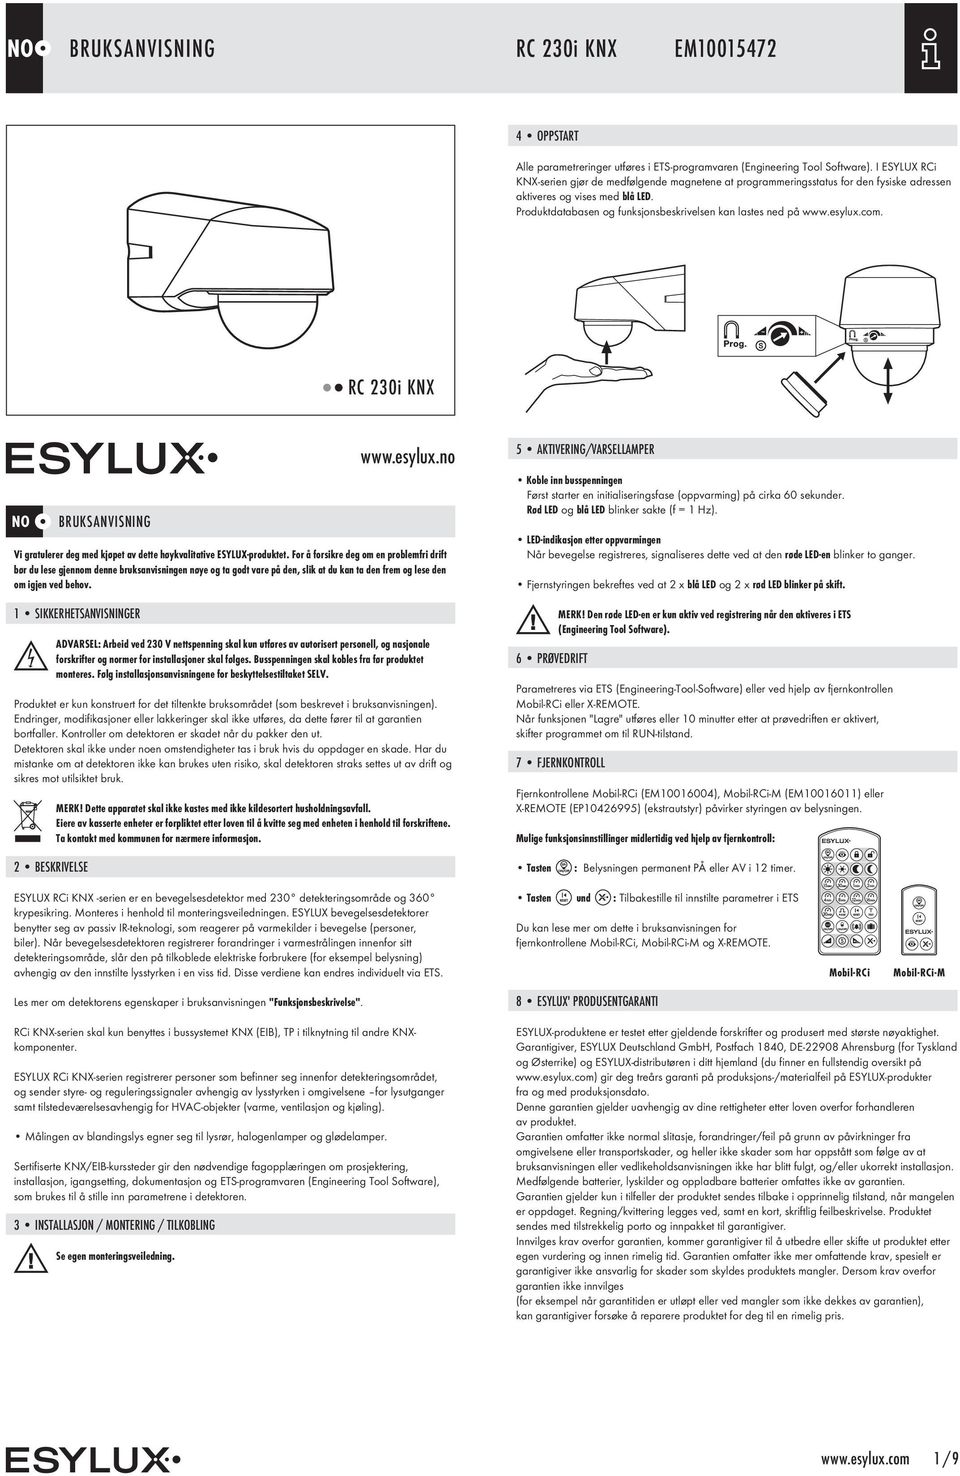 esylux.com. RC 230i KNX NO BRUKSANVISNING www.esylux.no Vi gratulerer deg med kjøpet av dette høykvalitative ESYLUX-produktet.